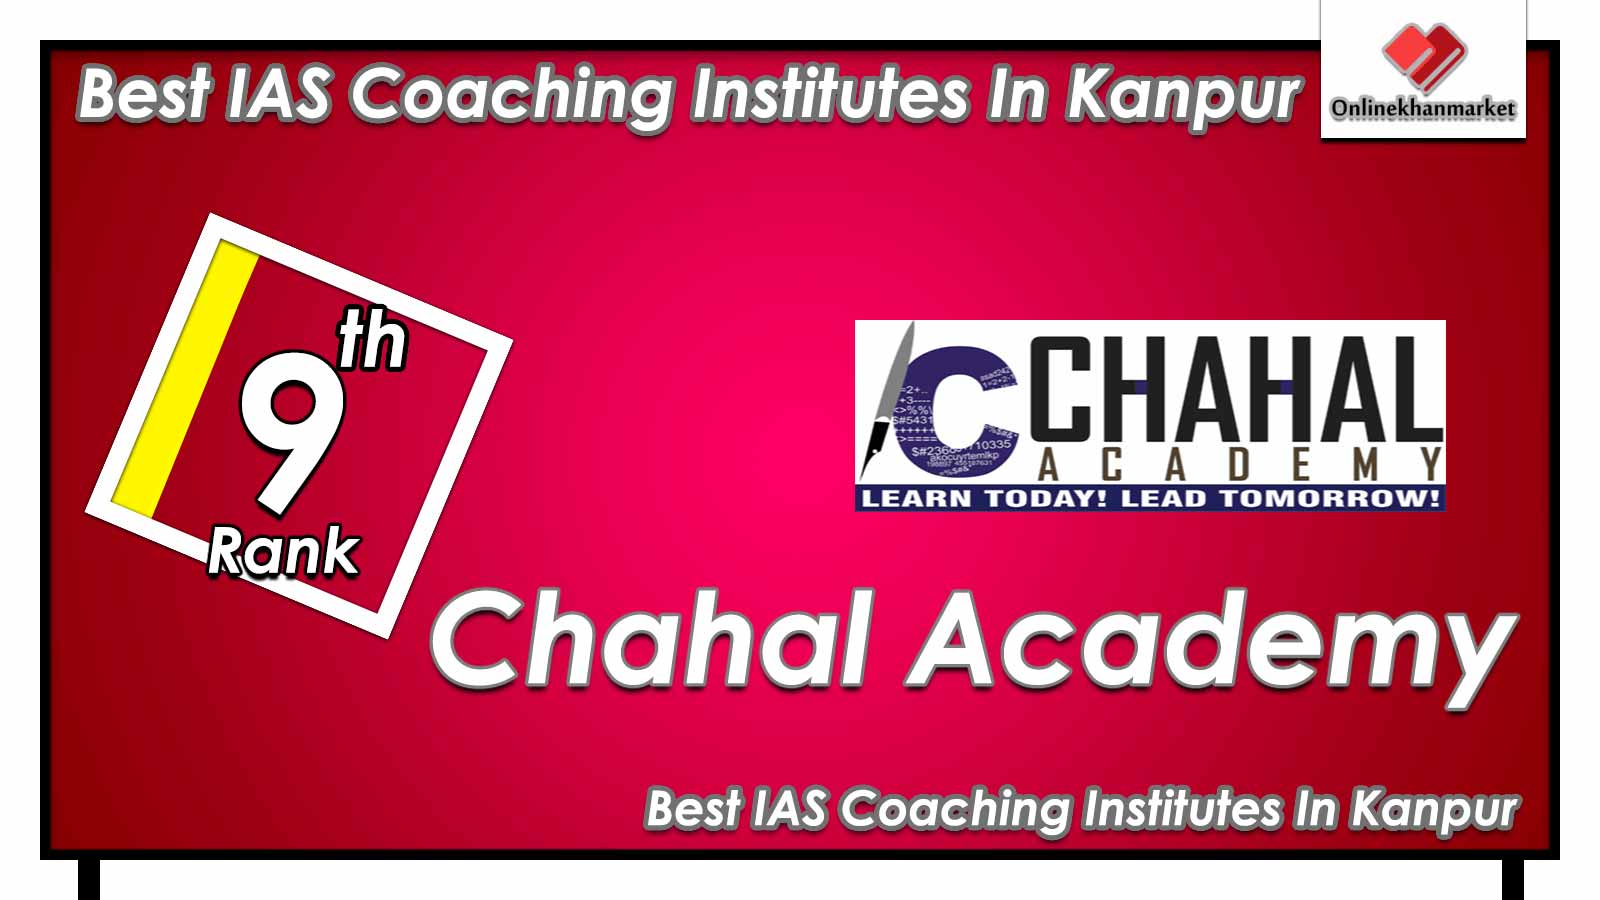 Top IAS Coaching in Kanpur